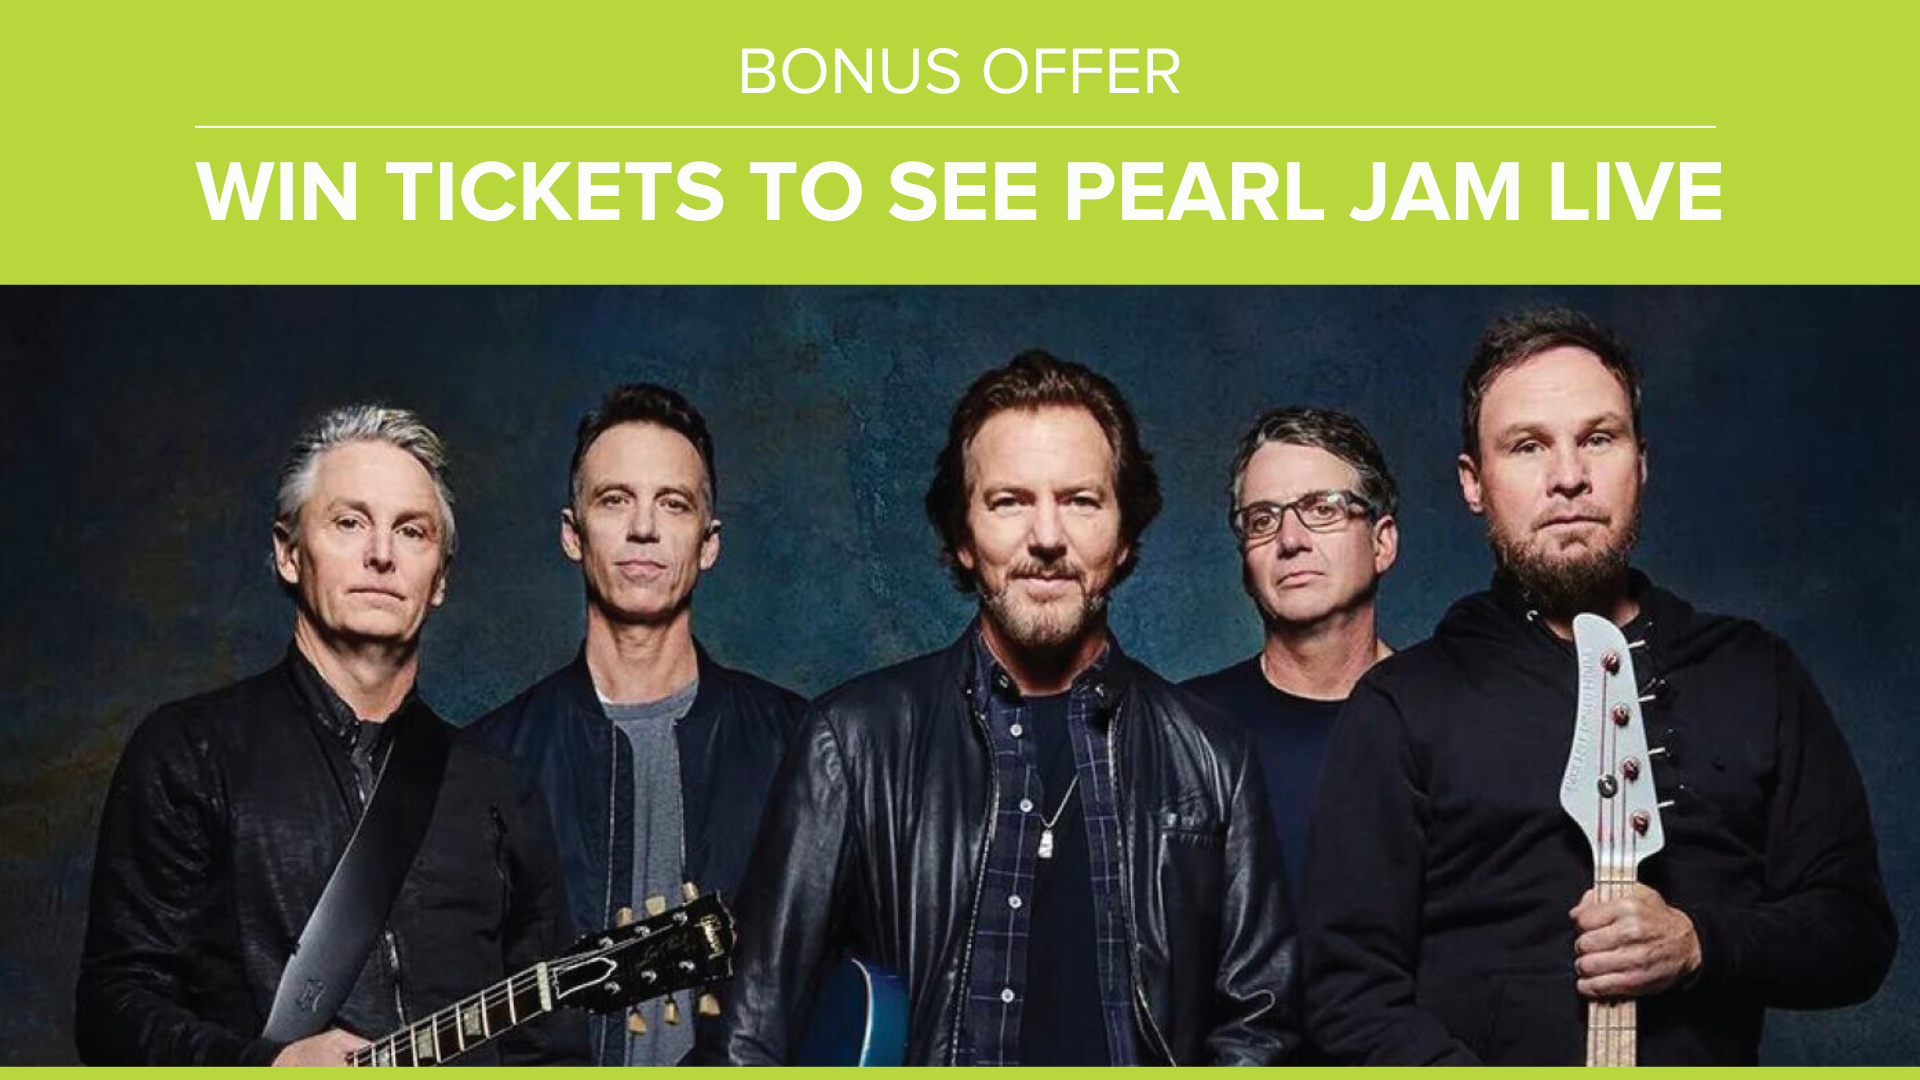 Cloudian_INCENTA_Bonus Offer_Pearl Jam_Header